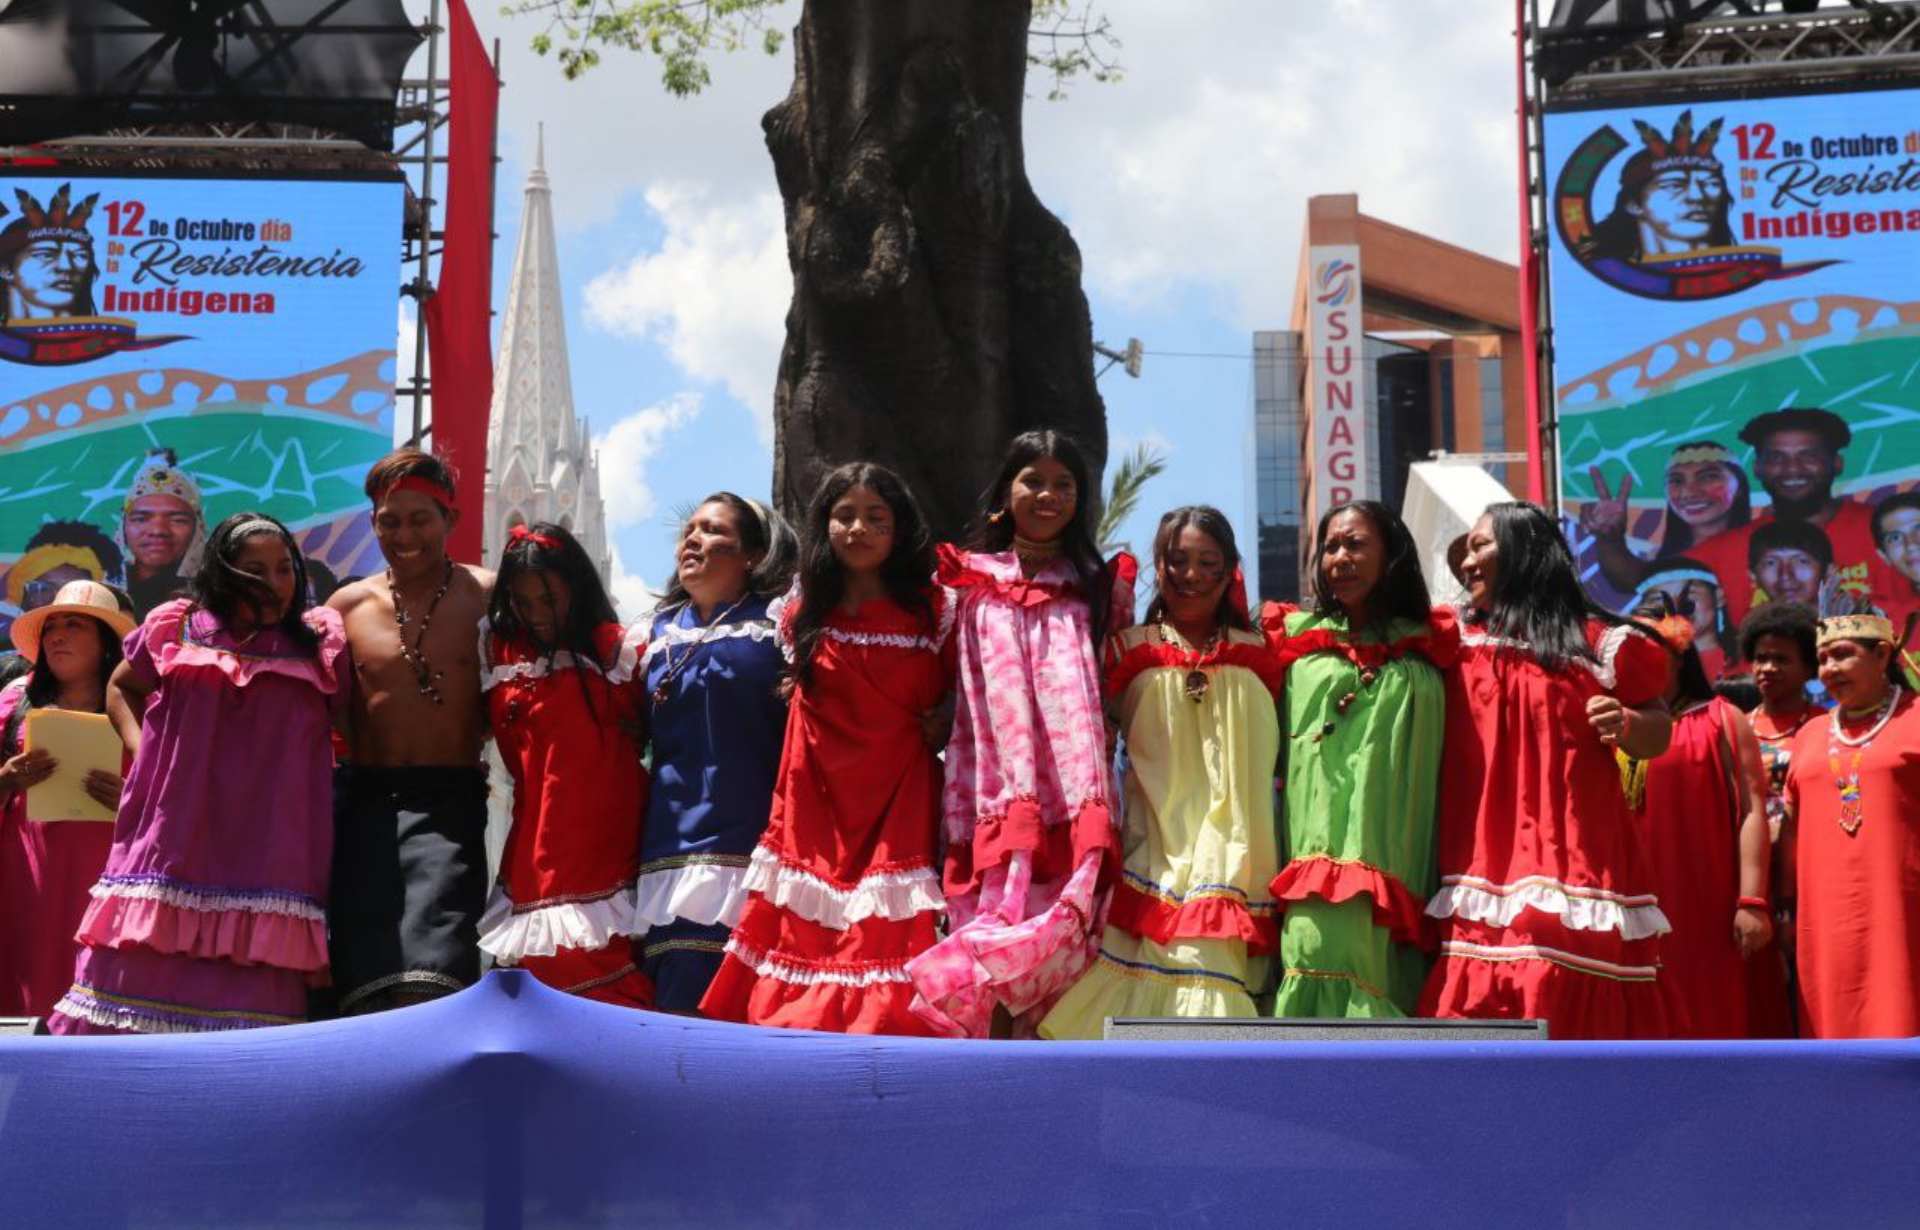 Indígenas Venezolanos Celebraron El 12 De Octubre Llamando A La Defensa 1268